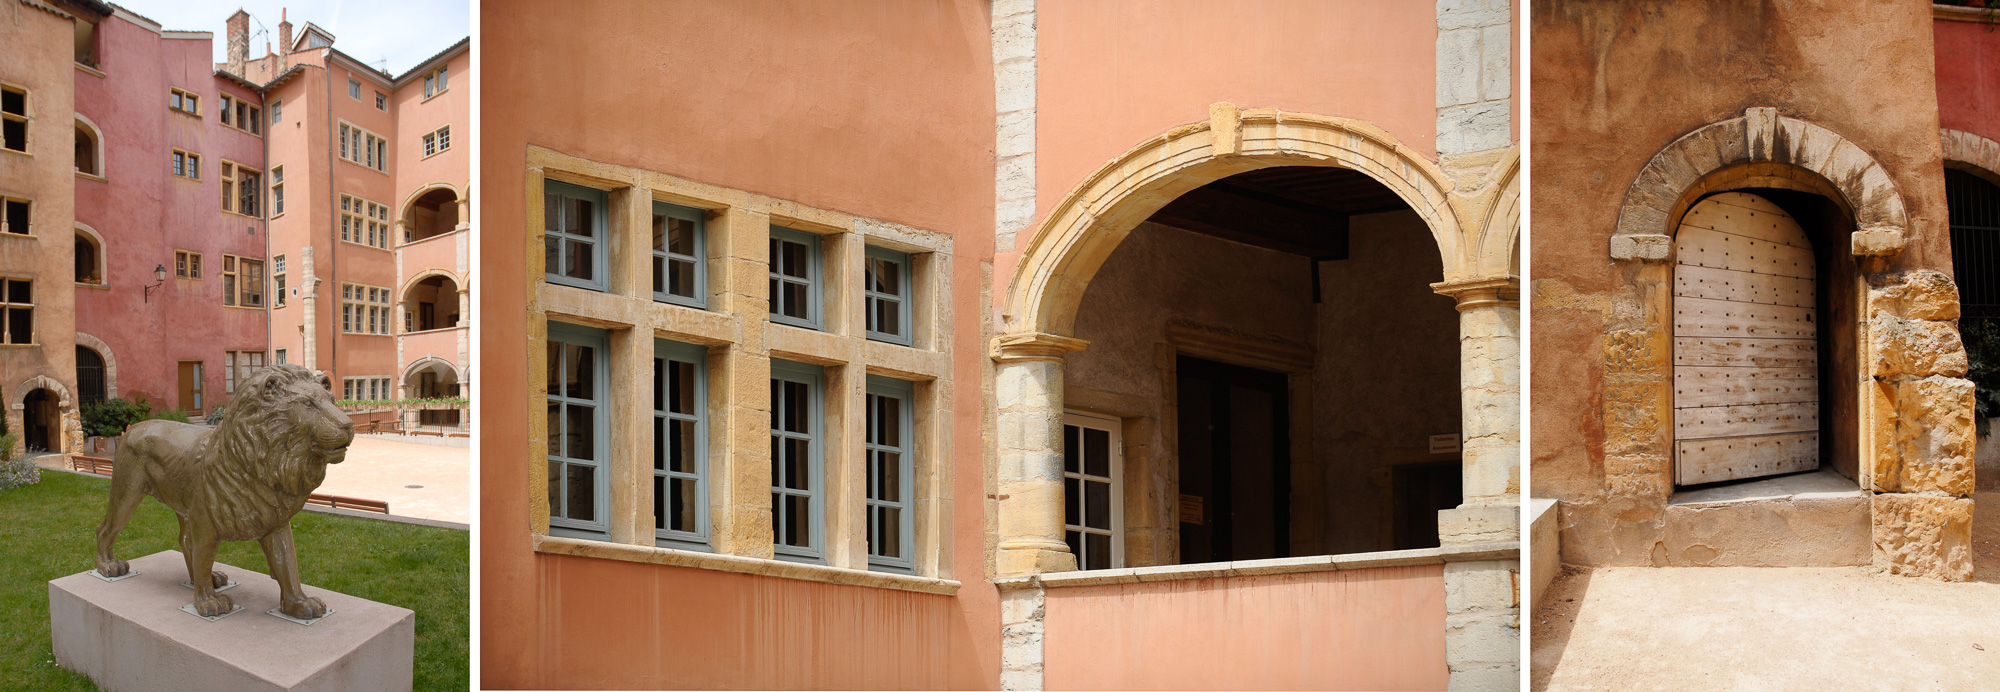 Vieux-Lyon, rue de la Bombarde musee de la miniature et du Décor de Cinéma. Fenêtres à meneaux.